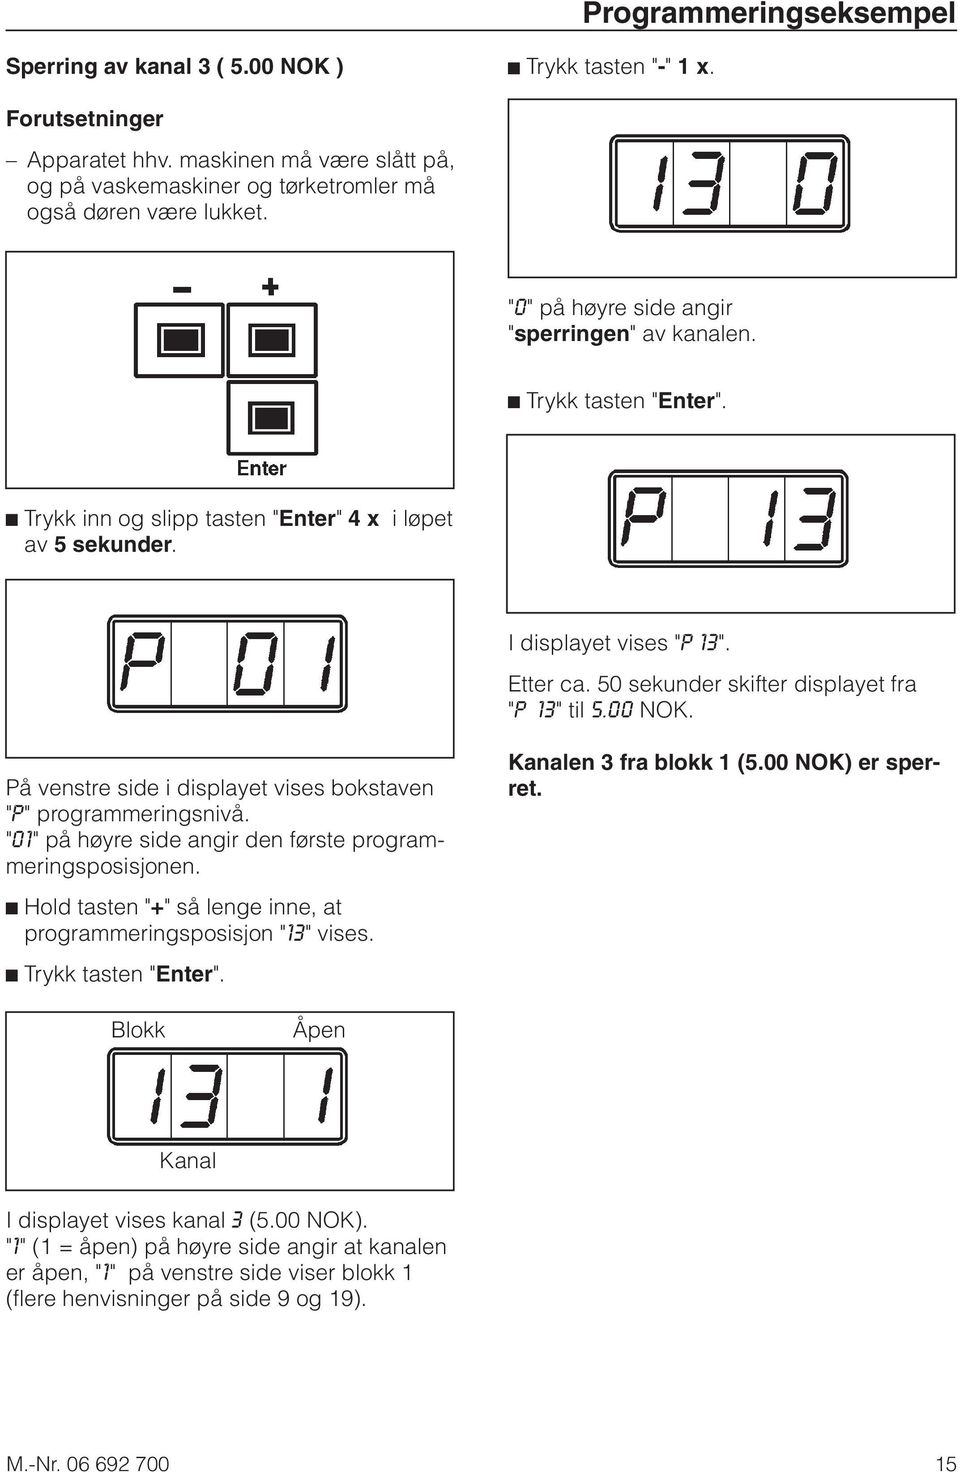 50 sekunder skifter displayet fra "P 13" til 5.00 NOK. På venstre side i displayet vises bokstaven "P" programmeringsnivå. "01" på høyre side angir den første programmeringsposisjonen.